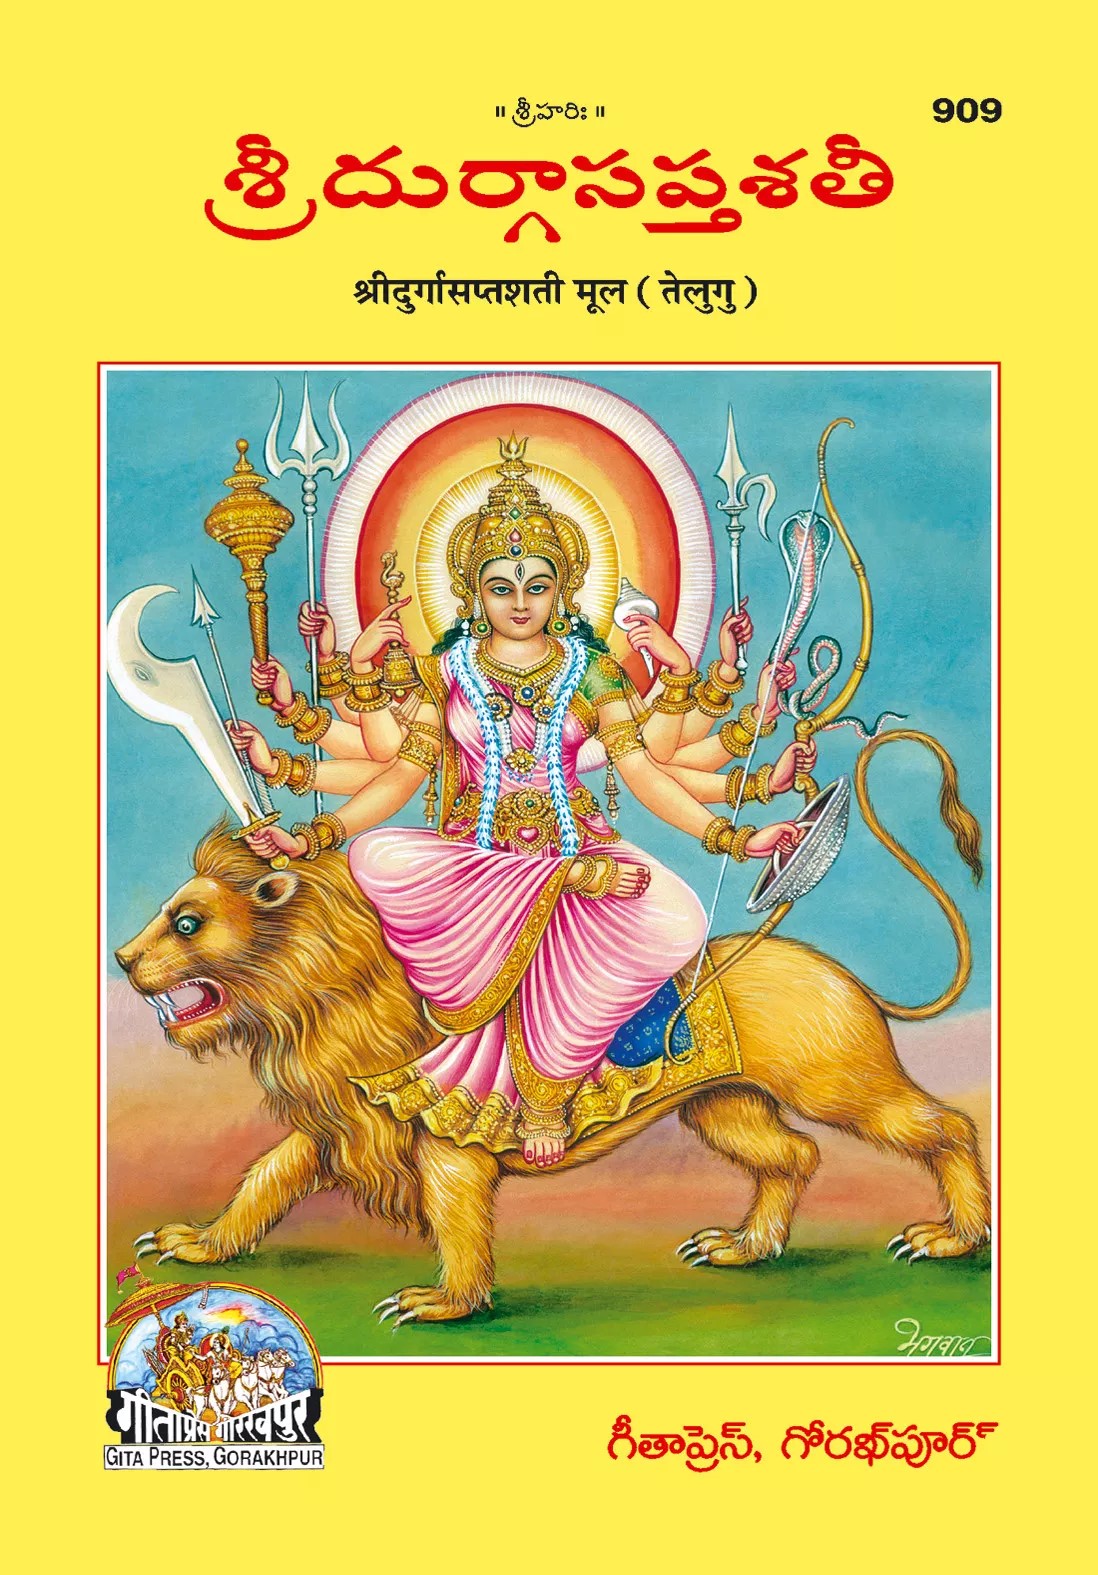 Durga Saptashati (శ్రీ దుర్గా సప్తశతి)